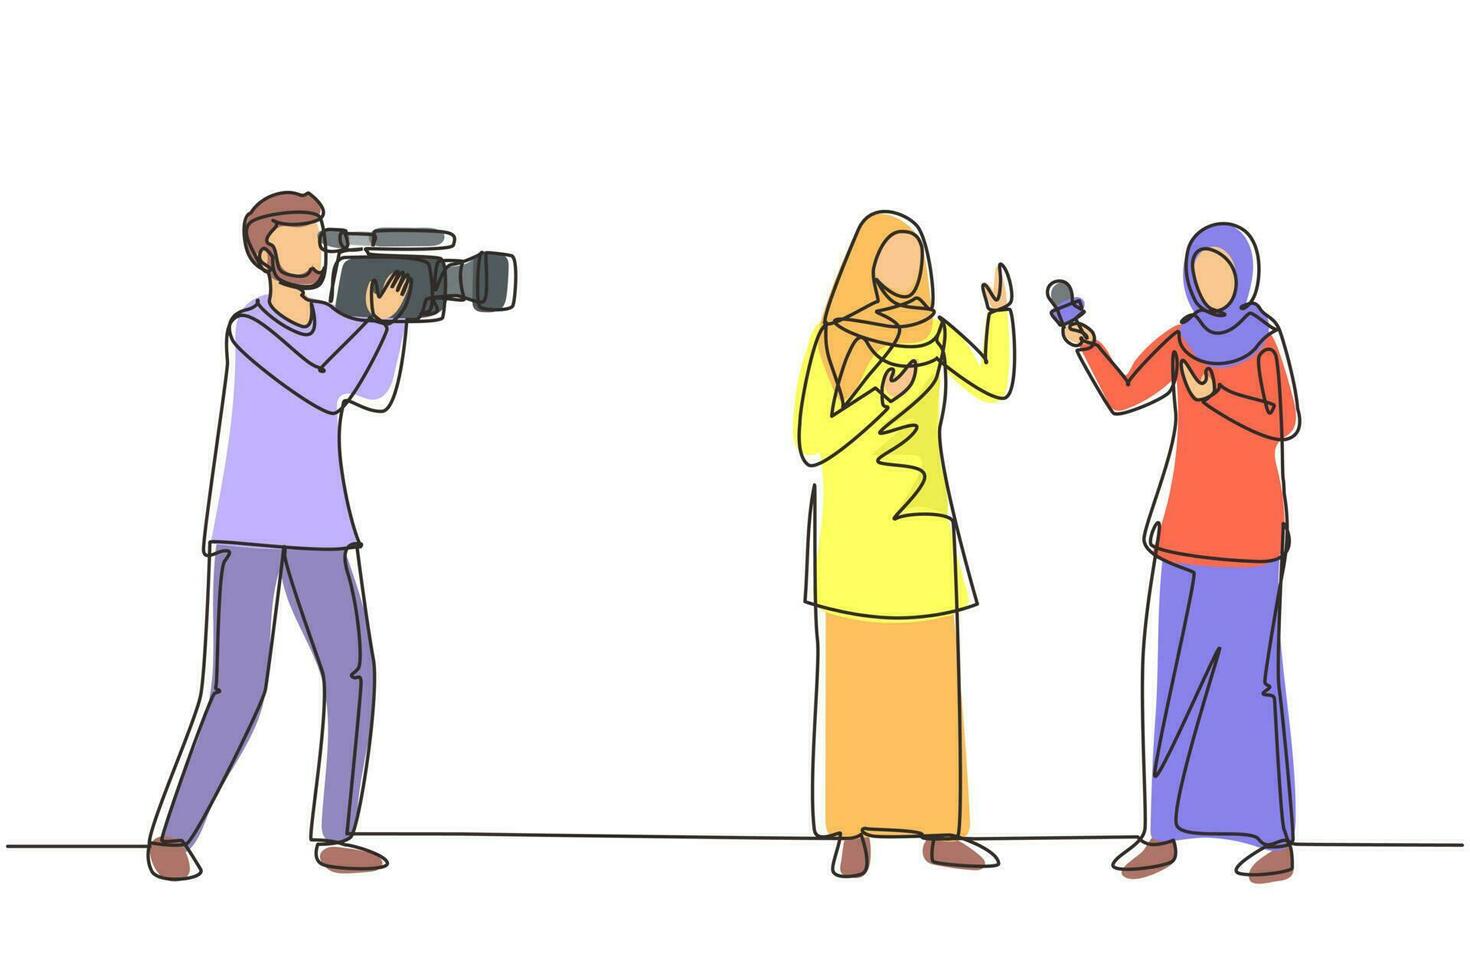 enkele een lijntekening arabische vrouw journalist met microfoon, interview arabisch meisje bij tv-studio. verslaggever en cameraman zenden het laatste nieuws uit via livestream. ononderbroken lijntekening ontwerp vector